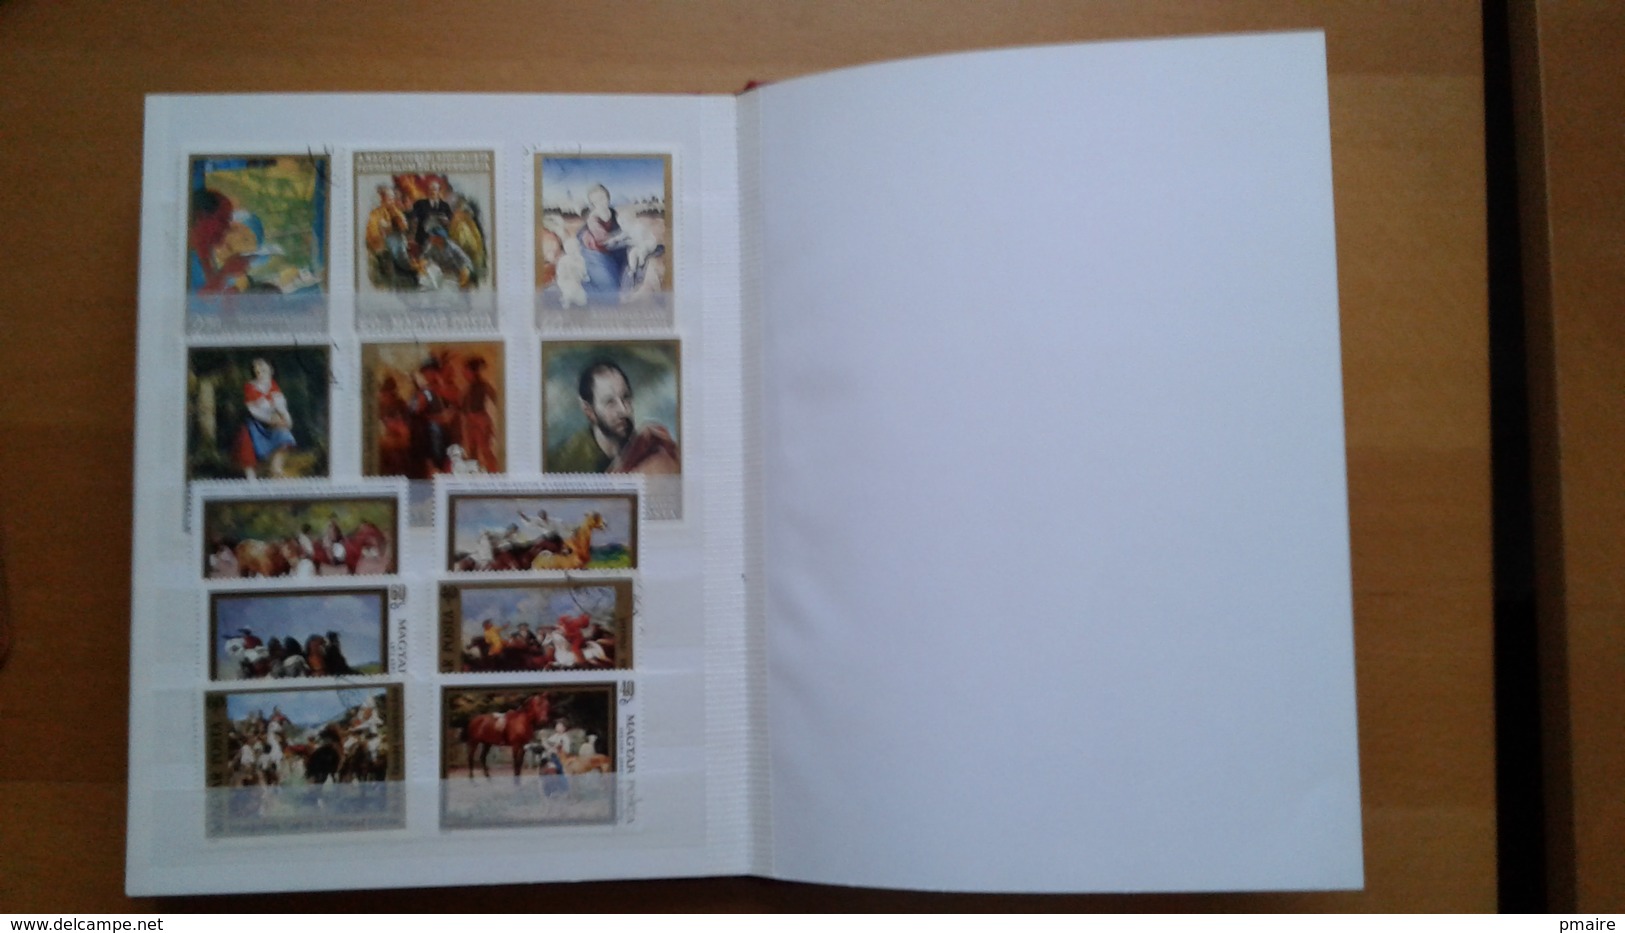 Petit album 16 pages plein de timbres theme Arts Tableaux ...